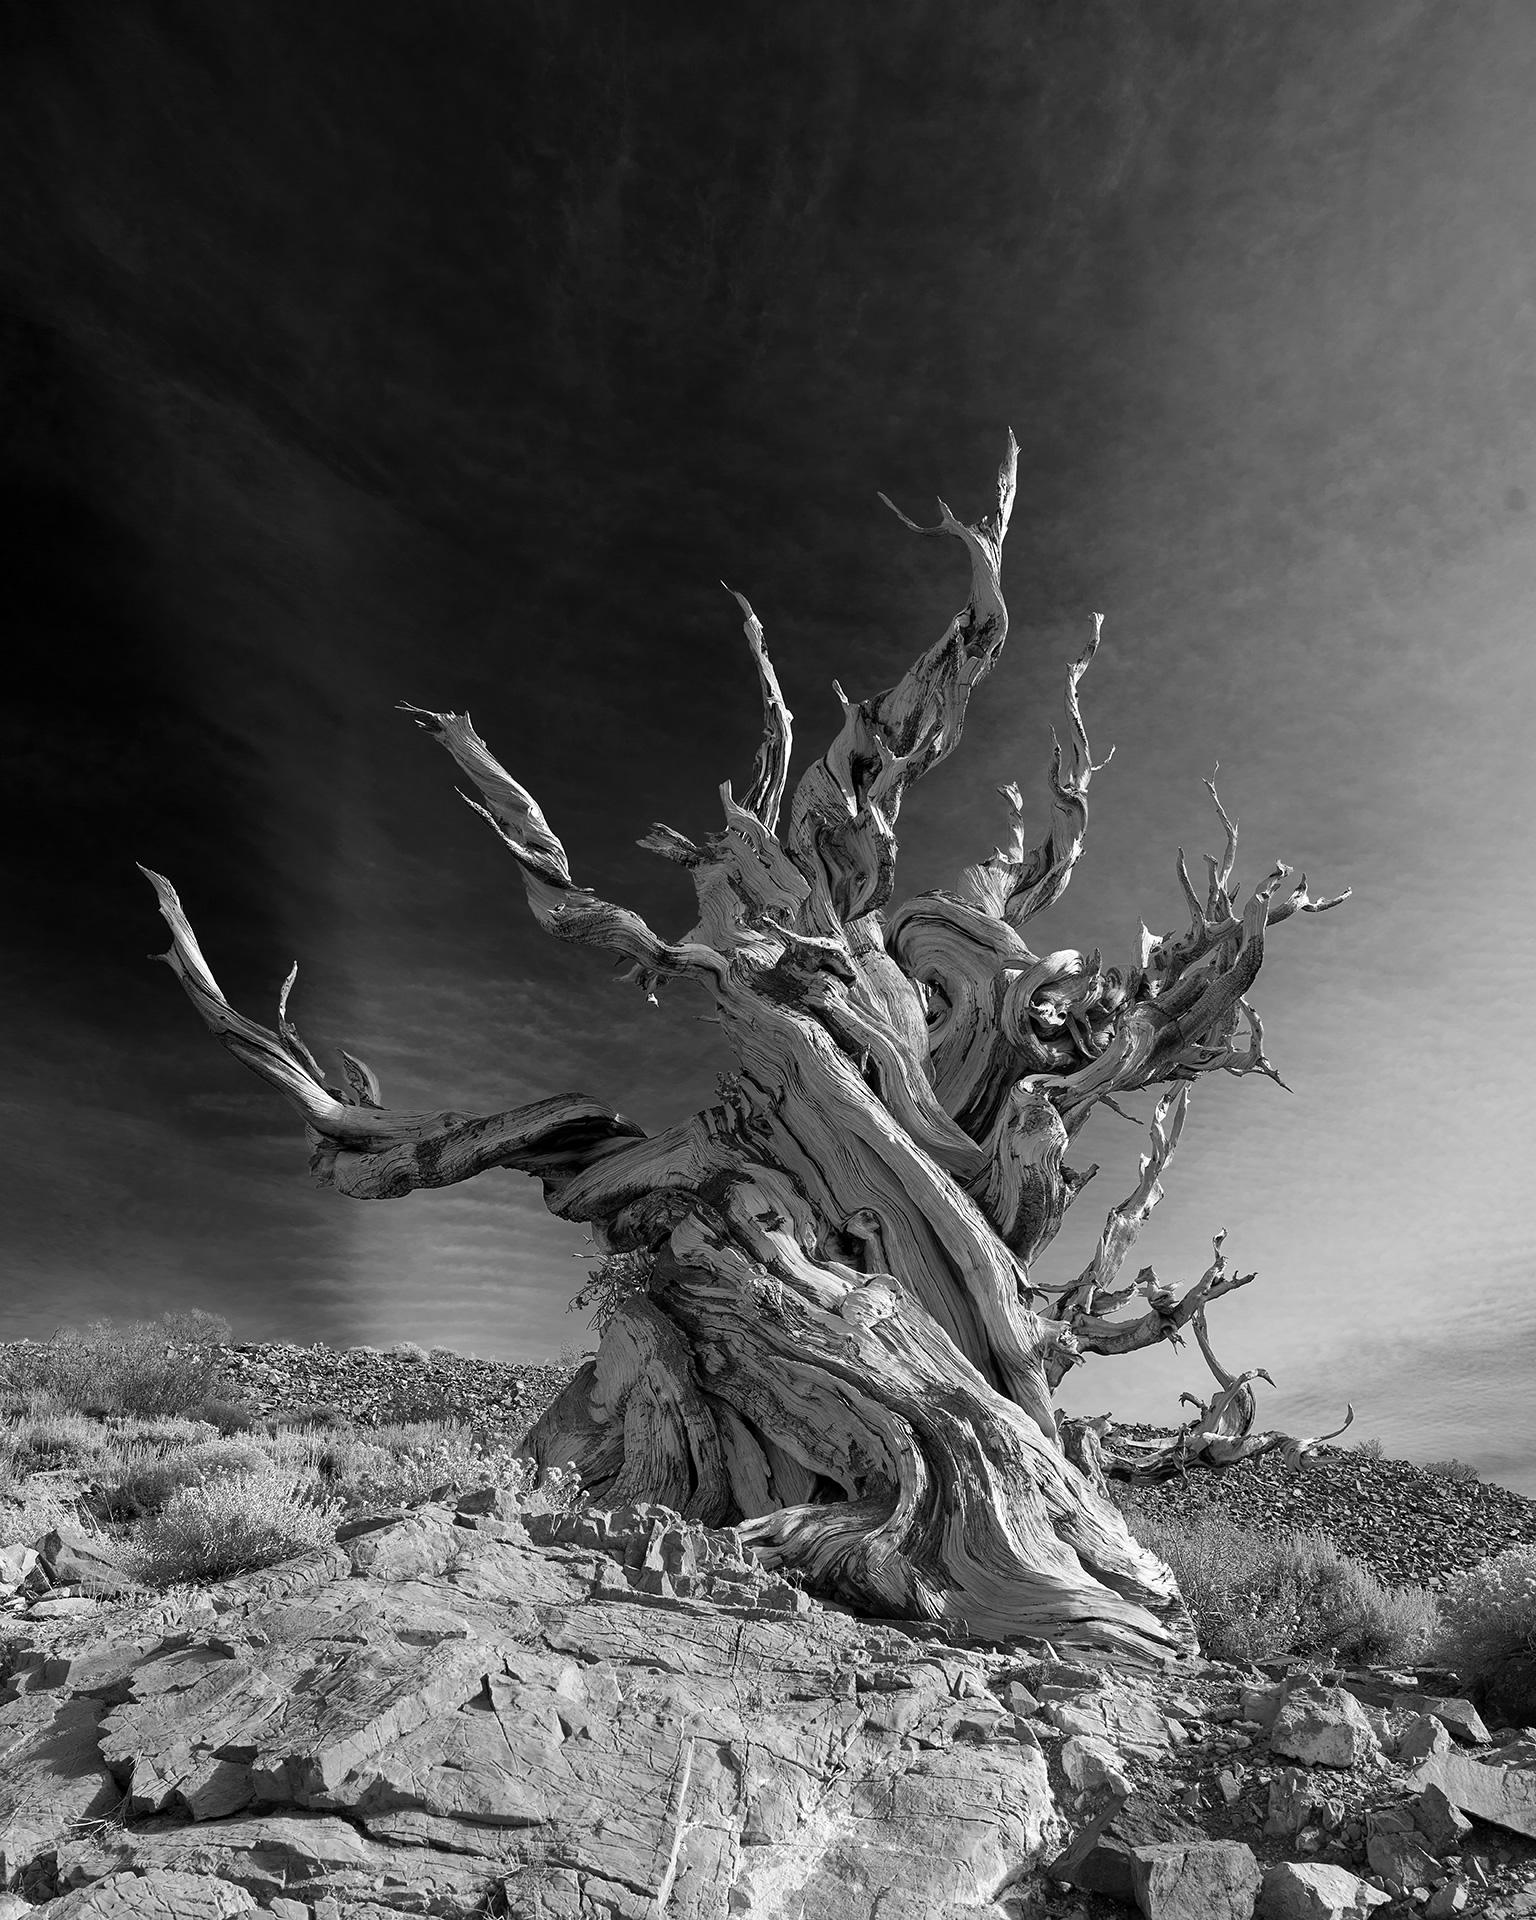 Tree Study V – großformatige Fotografie einer dramatischen Berglandschaft